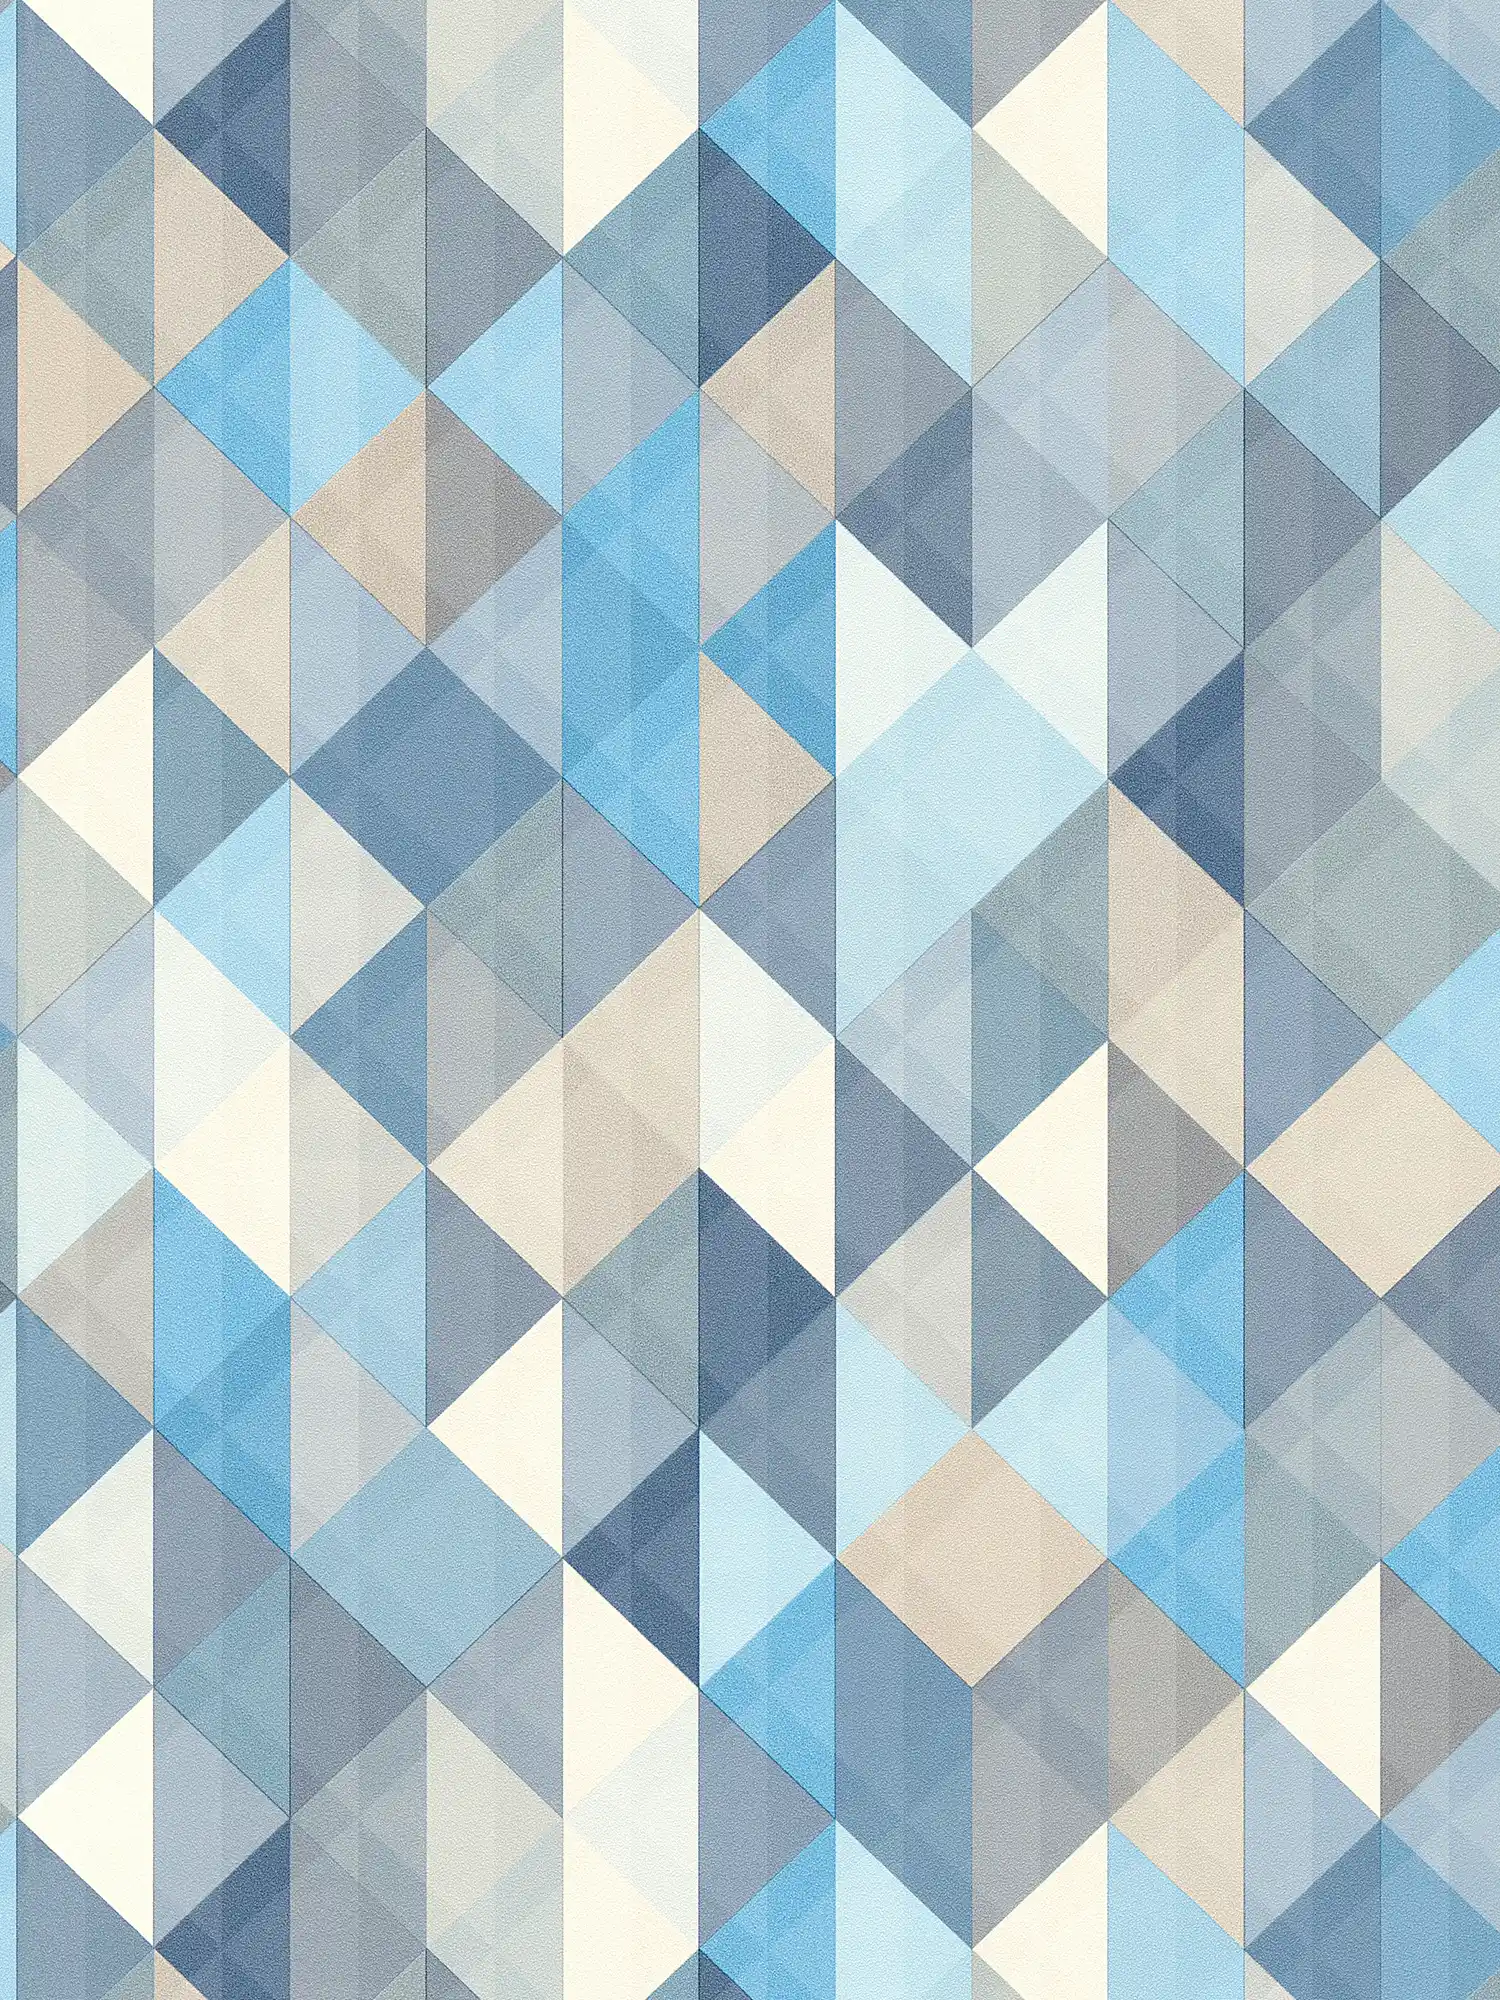 Papier peint Scandinavian Style à motifs géométriques - bleu, gris, beige
